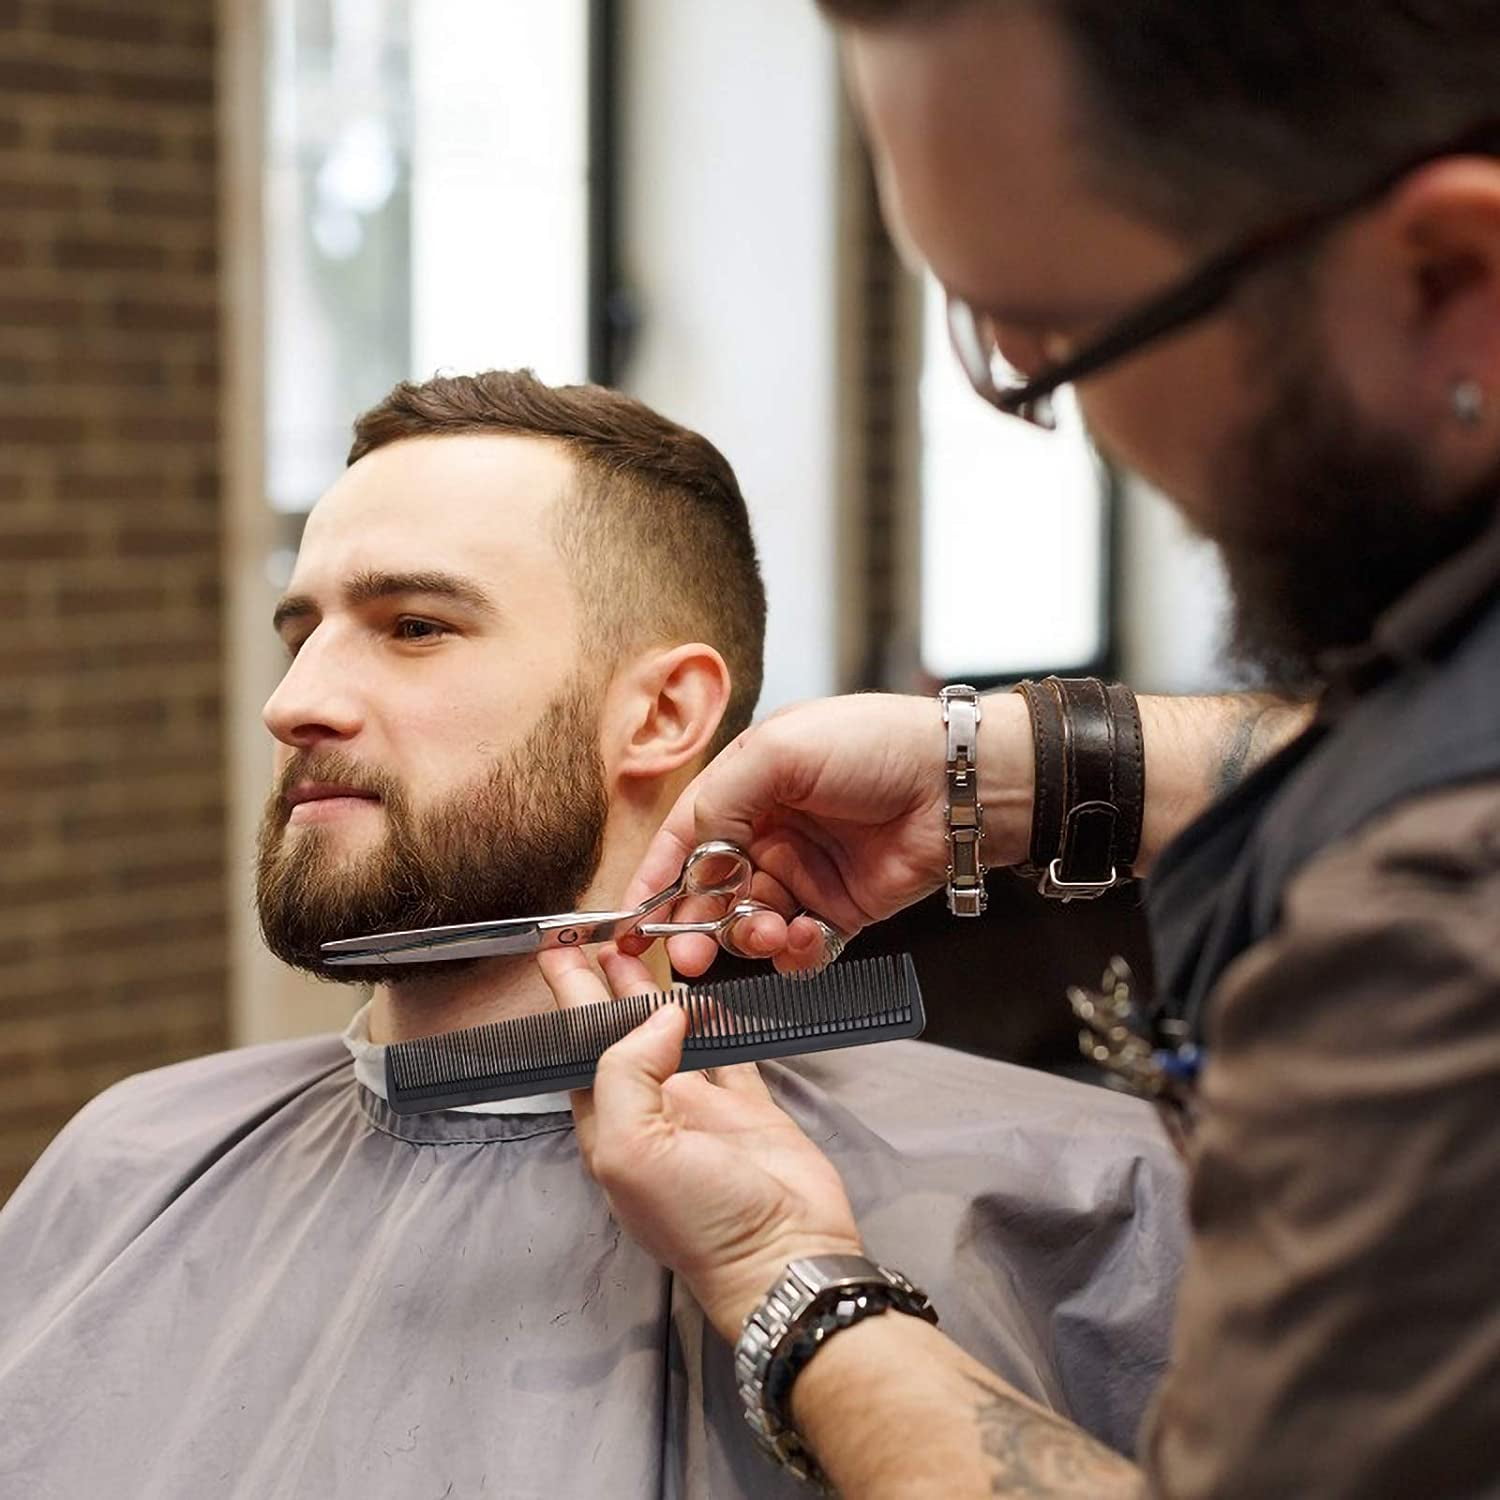 Hair Cutting Scissors Hair Shears, Fcysy Professional 6” Barber Haircut  Salon Scissors, Sharp Haircutting Scizzors Hairdressing Sheers for Cutting